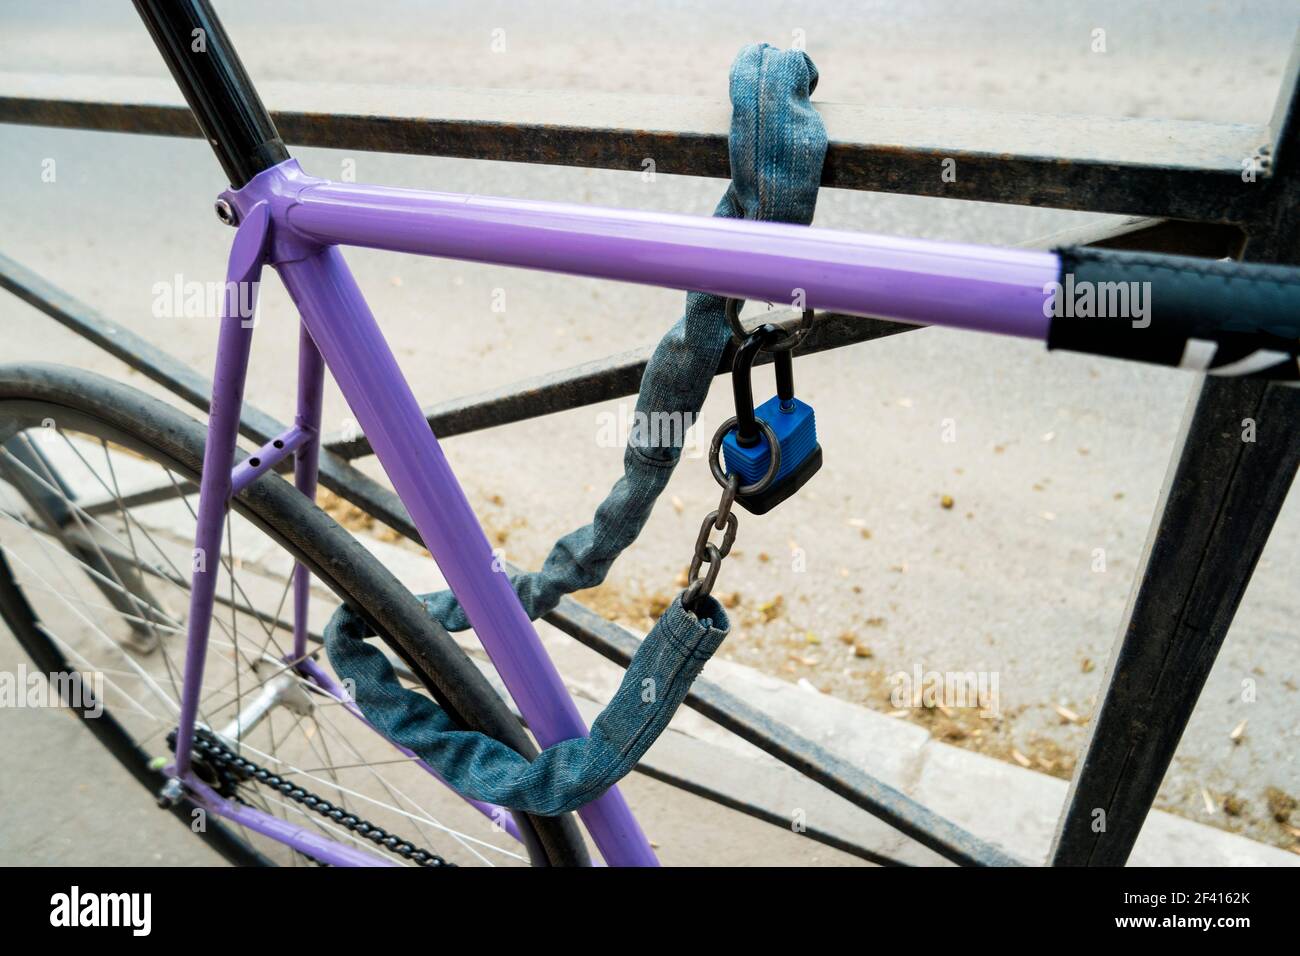 Eisenkette und Schloss auf einem alten Fahrrad von violetter Farbe. Abschließbar Fahrrad auf Fahrrad-Parkplatz im Freien. Eisenkette und Schloss auf einem alten Fahrrad von violetter Farbe Stockfoto